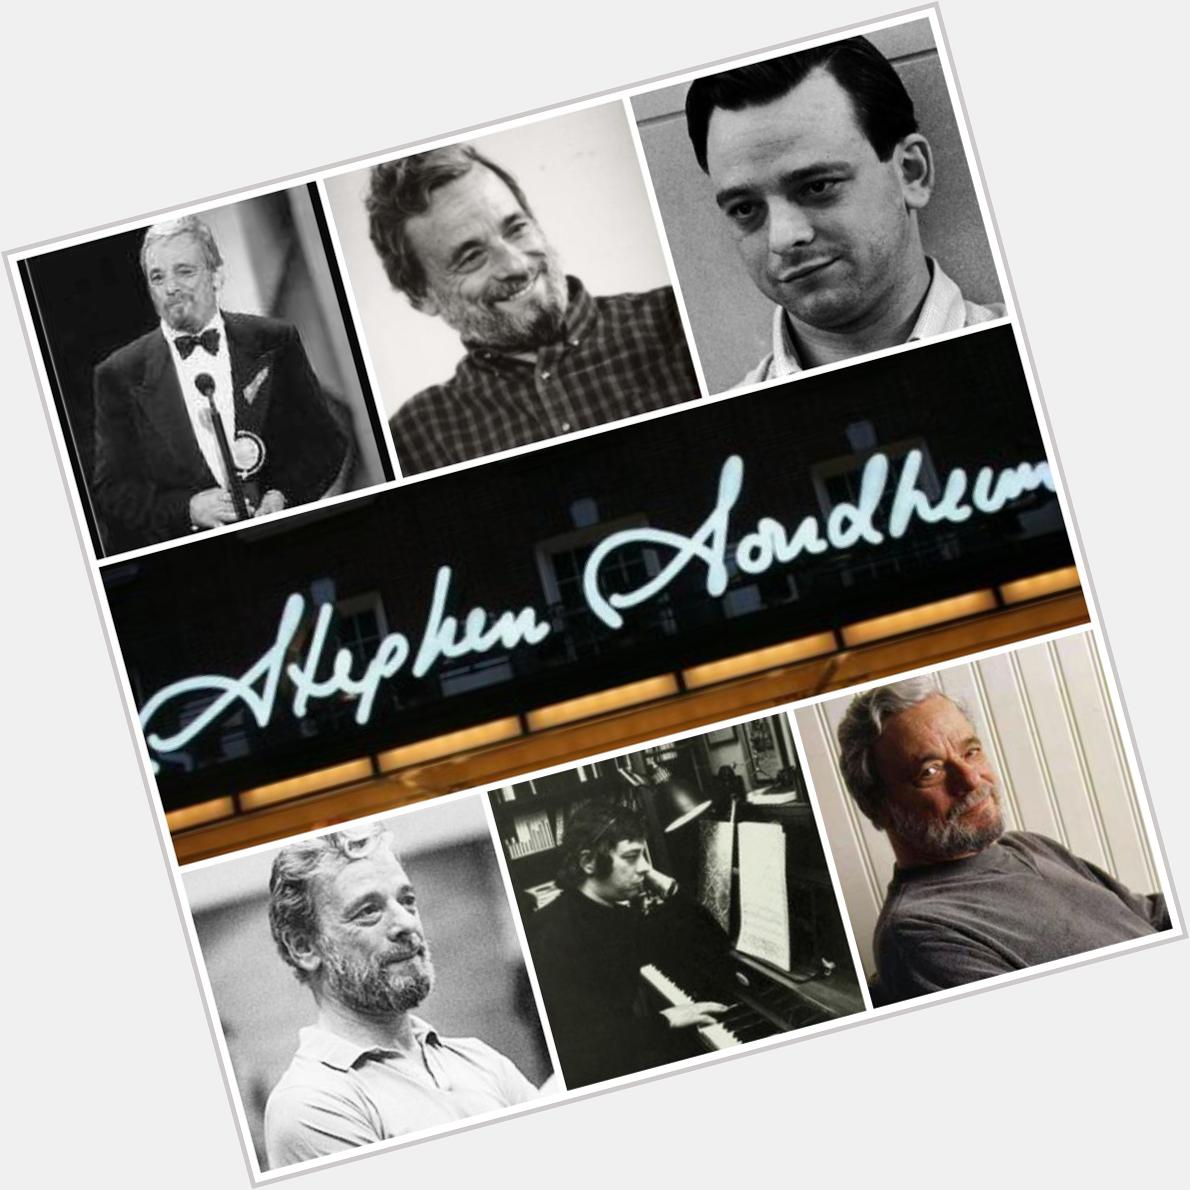 Happy birthday to Stephen Sondheim!! What is your favorite Sondheim show? 